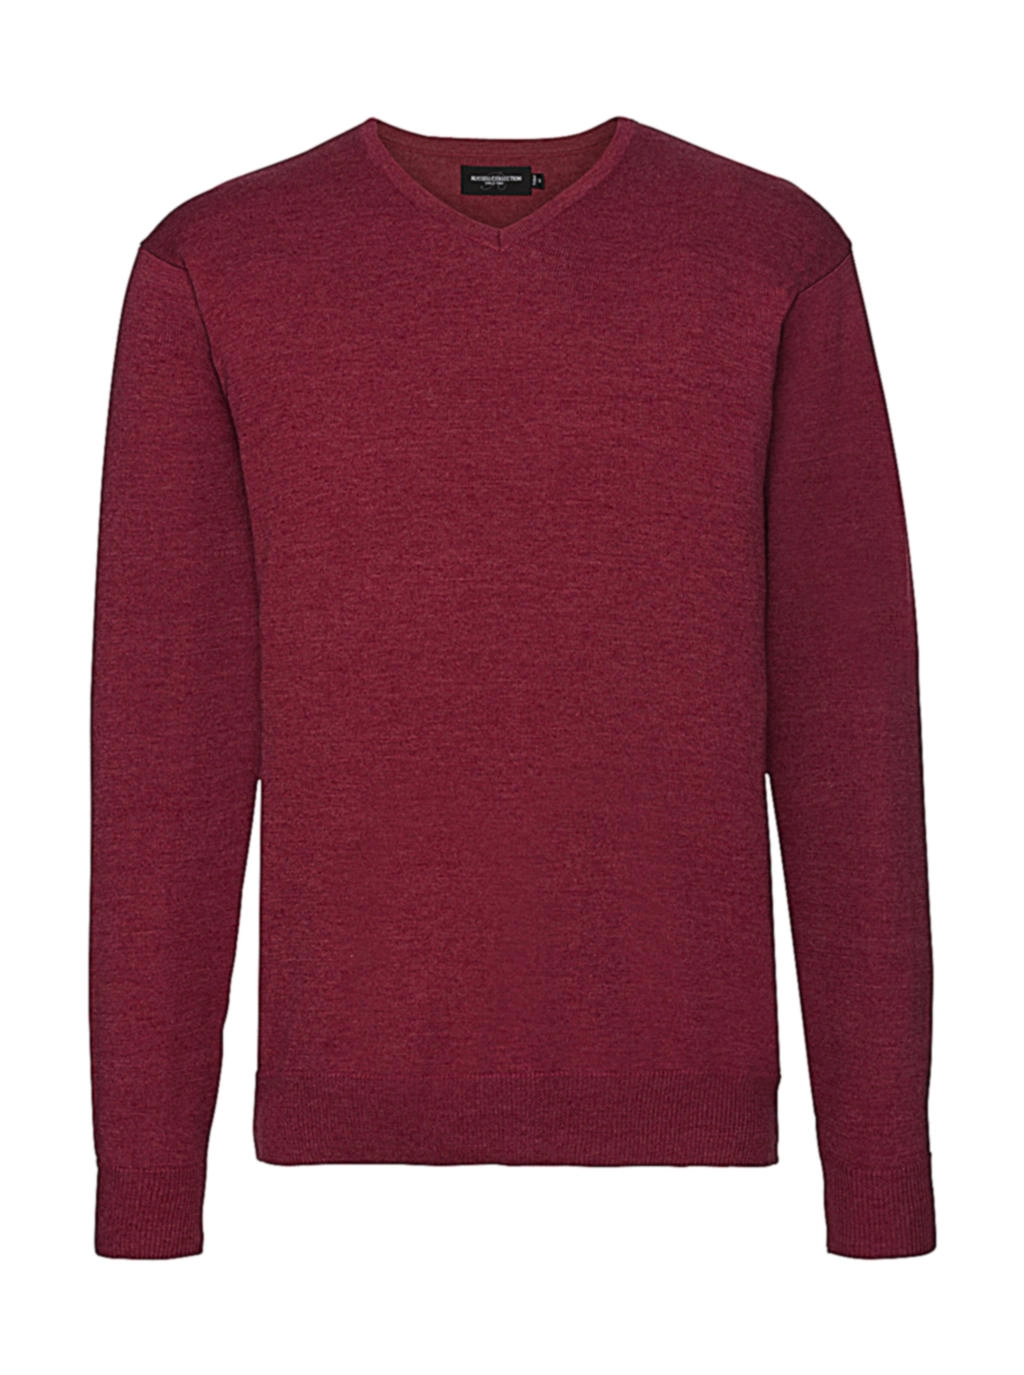 Men`s V-Neck Knitted Pullover zum Besticken und Bedrucken in der Farbe Cranberry Marl mit Ihren Logo, Schriftzug oder Motiv.